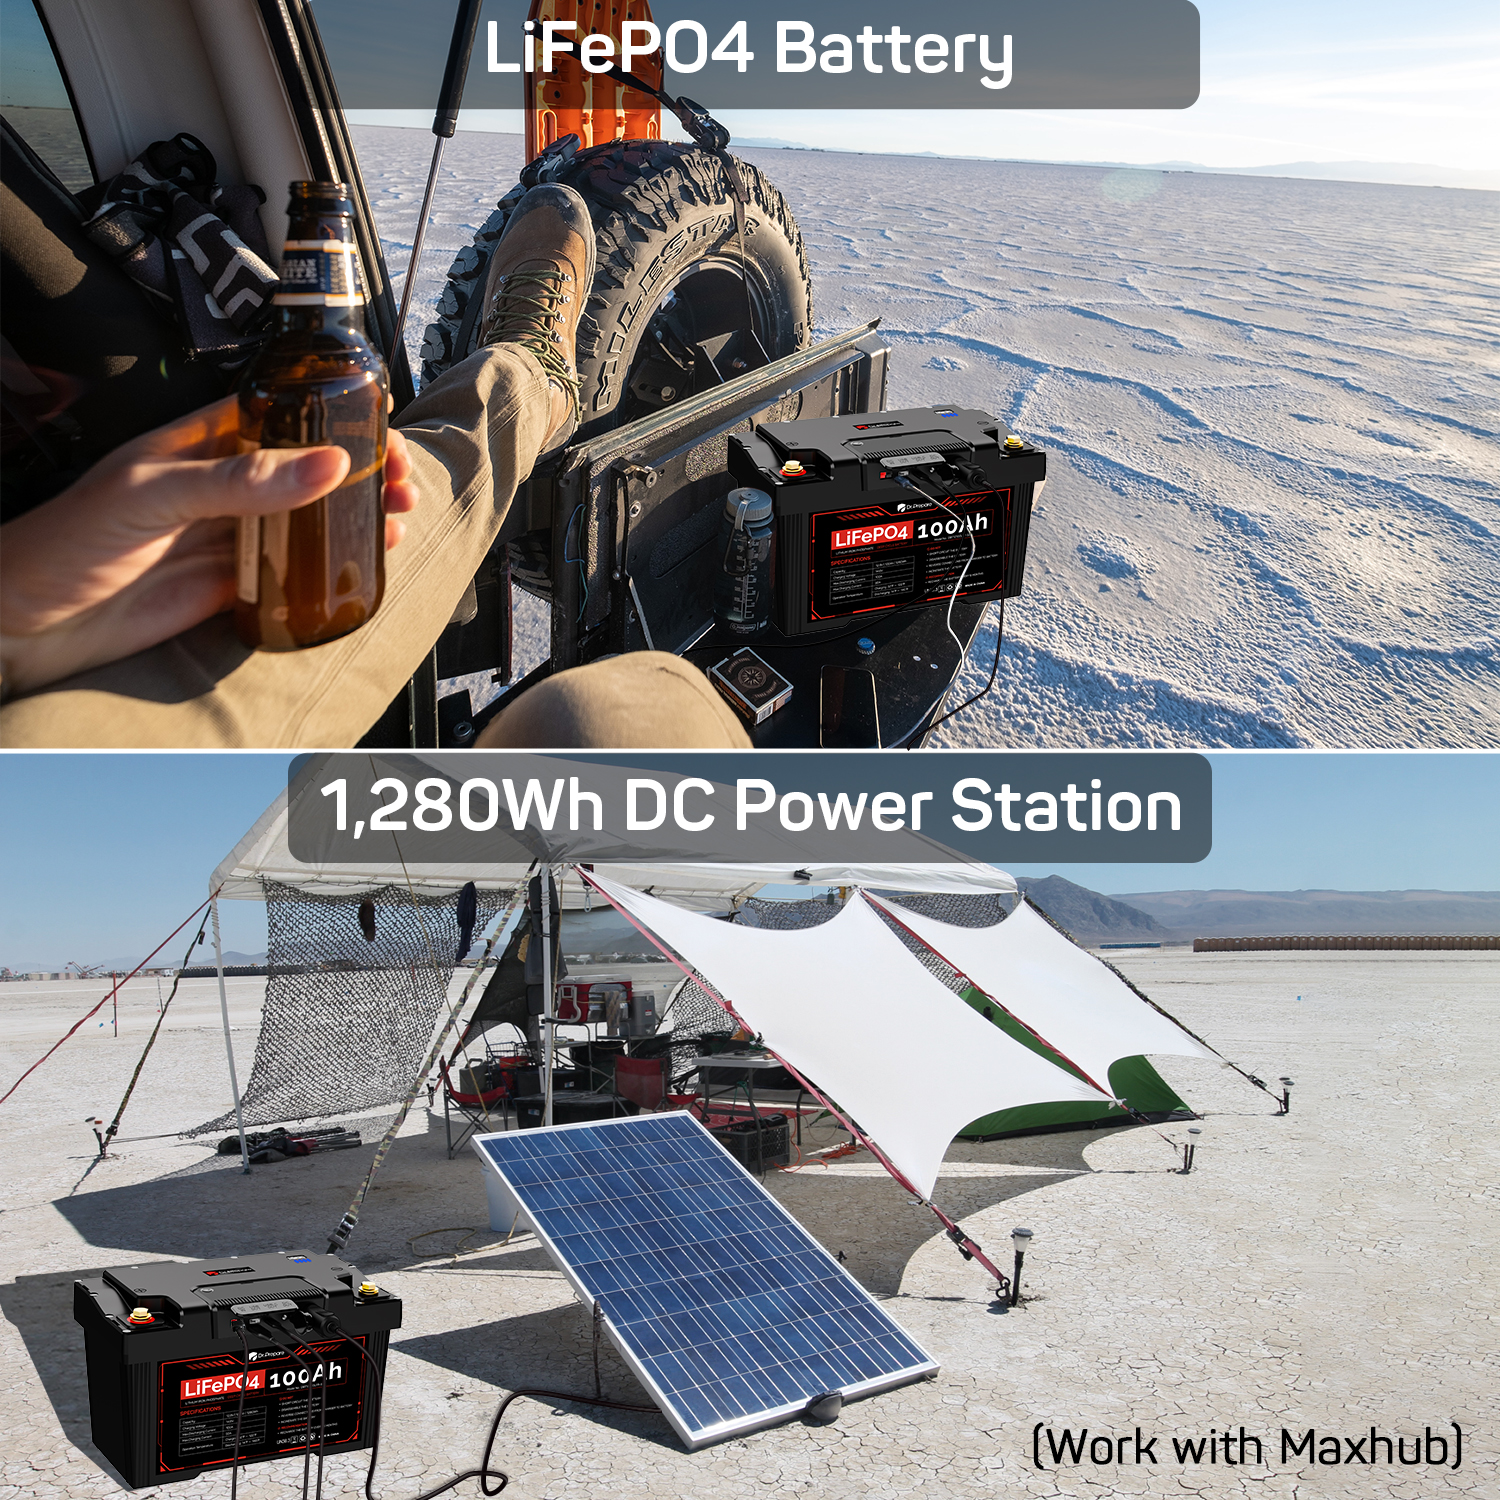 100Ah 12V PowerMax LiFePO4 Battery / 1280Wh Portable Power Station | Akkus und PowerBanks